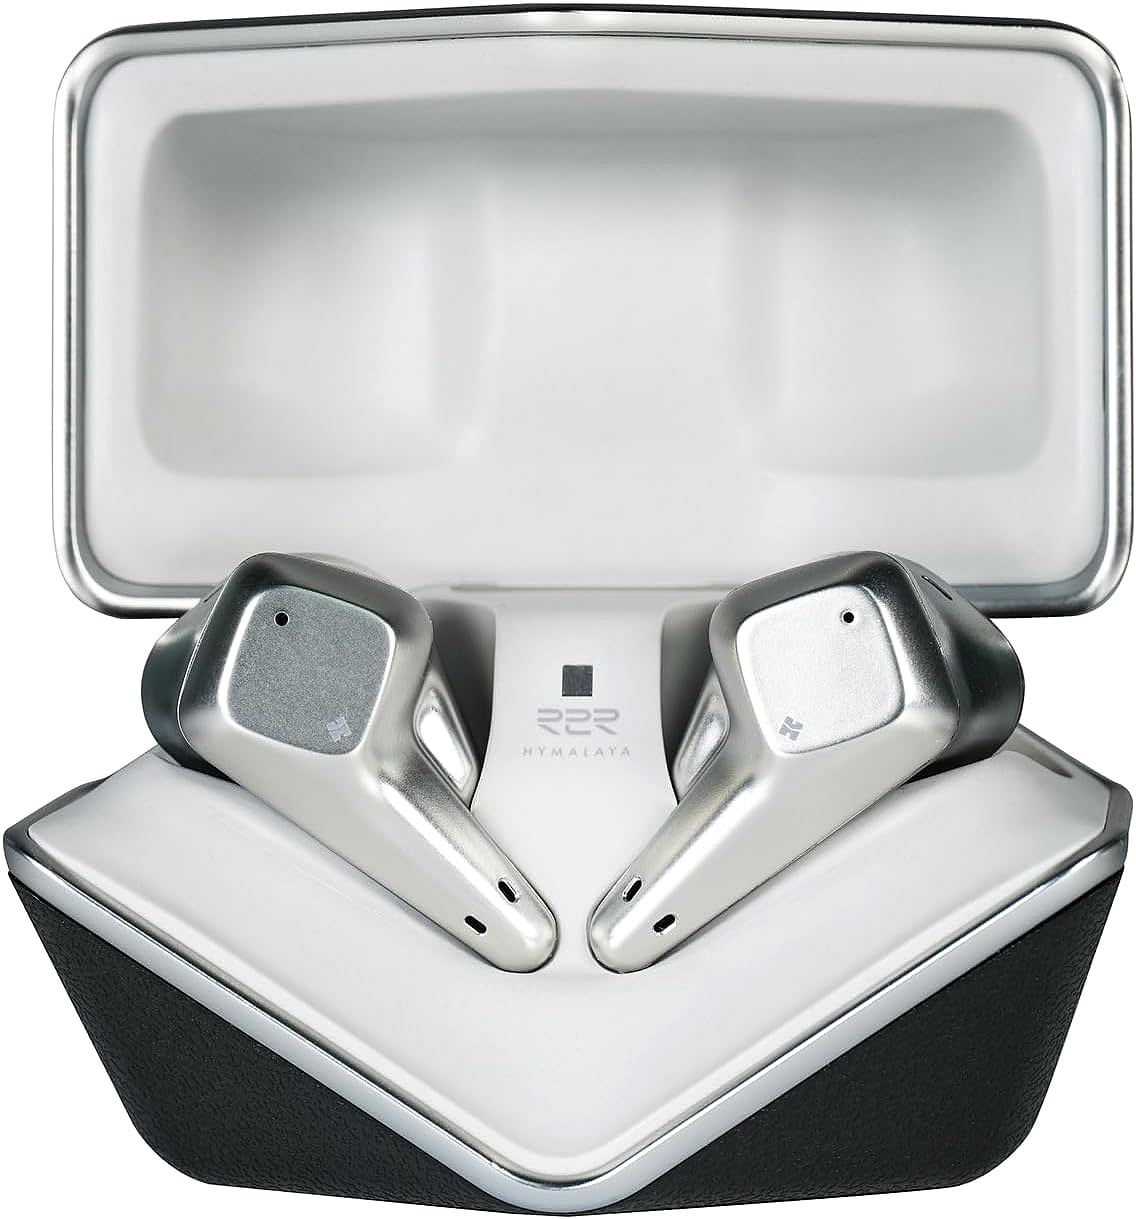 HIFIMAN SVANAR Wireless earbuds - A Flagship True Wireless Earbud That Redefines Hi-Fi Sound